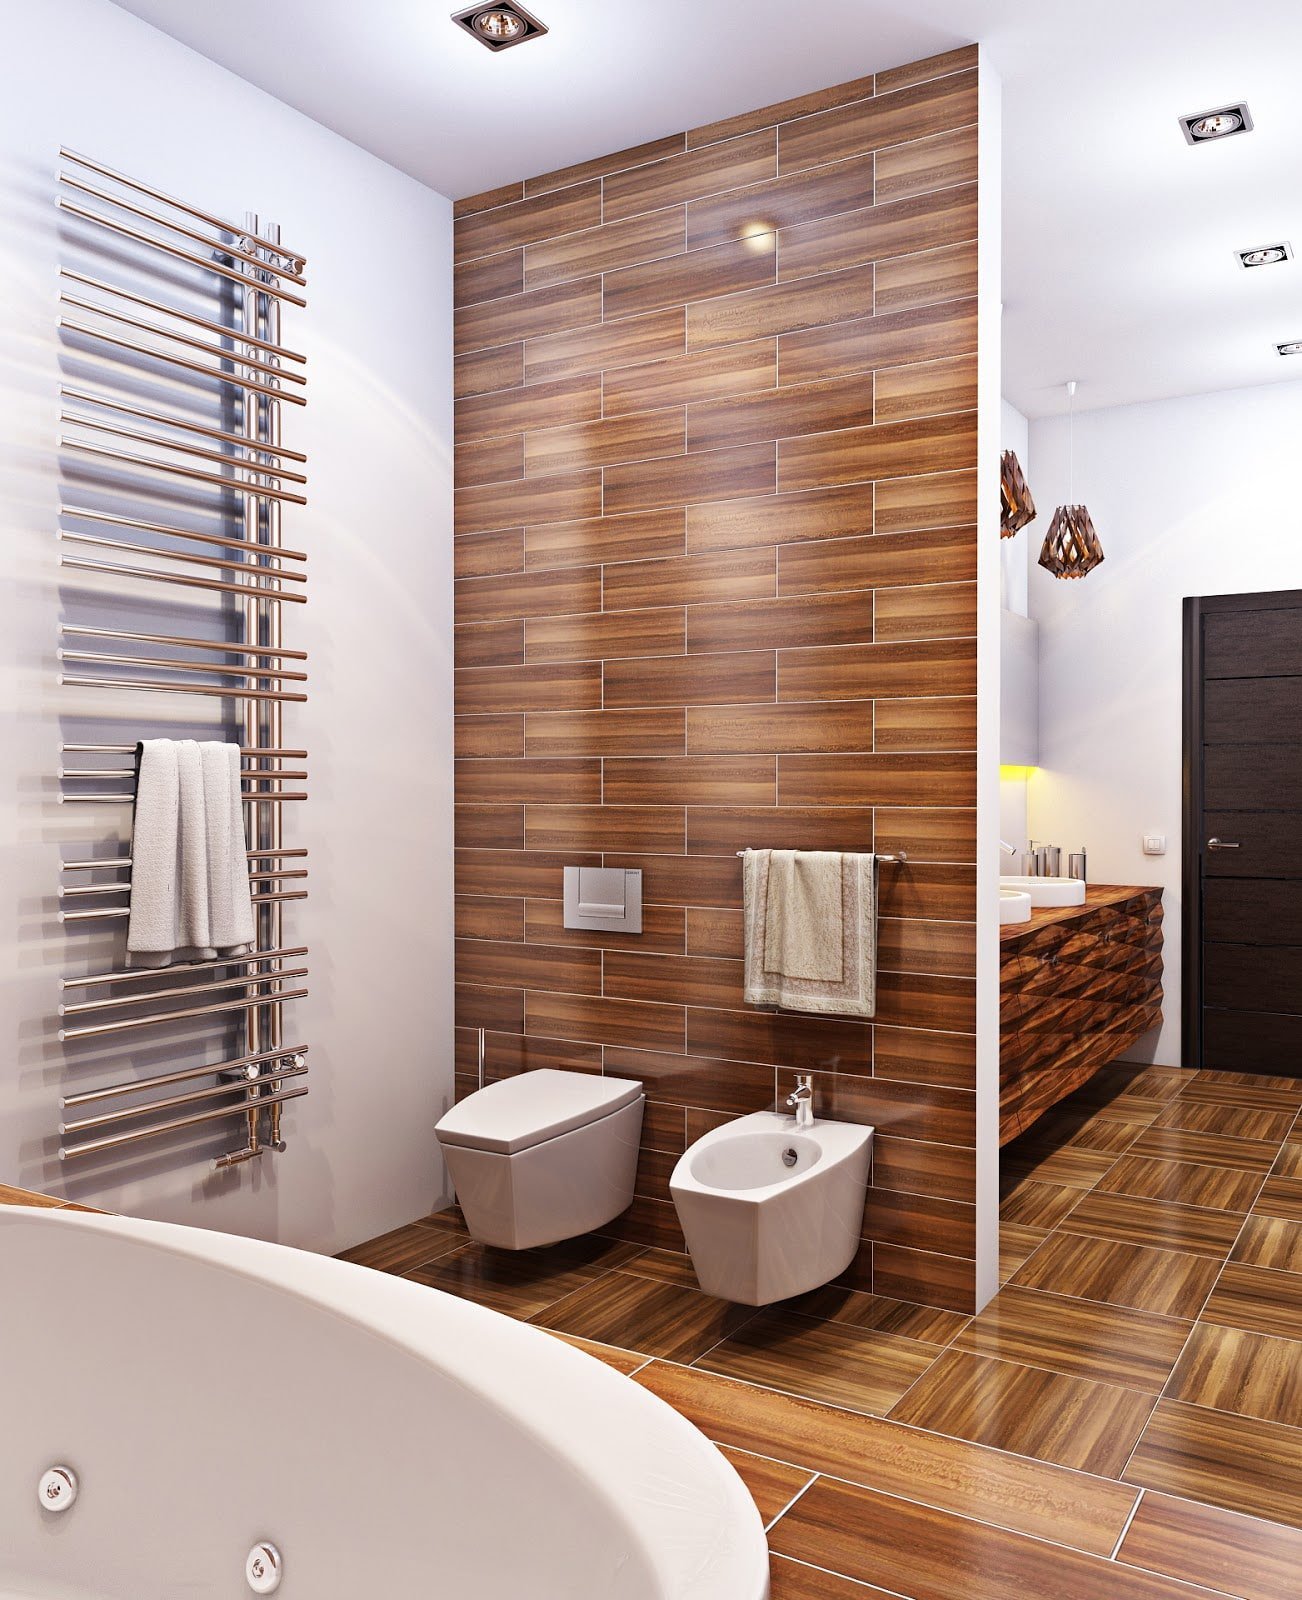 Плитка для ванной под дерево в интерьере (56 фото) - дизайн, фото отделки ванной комнаты под дерево